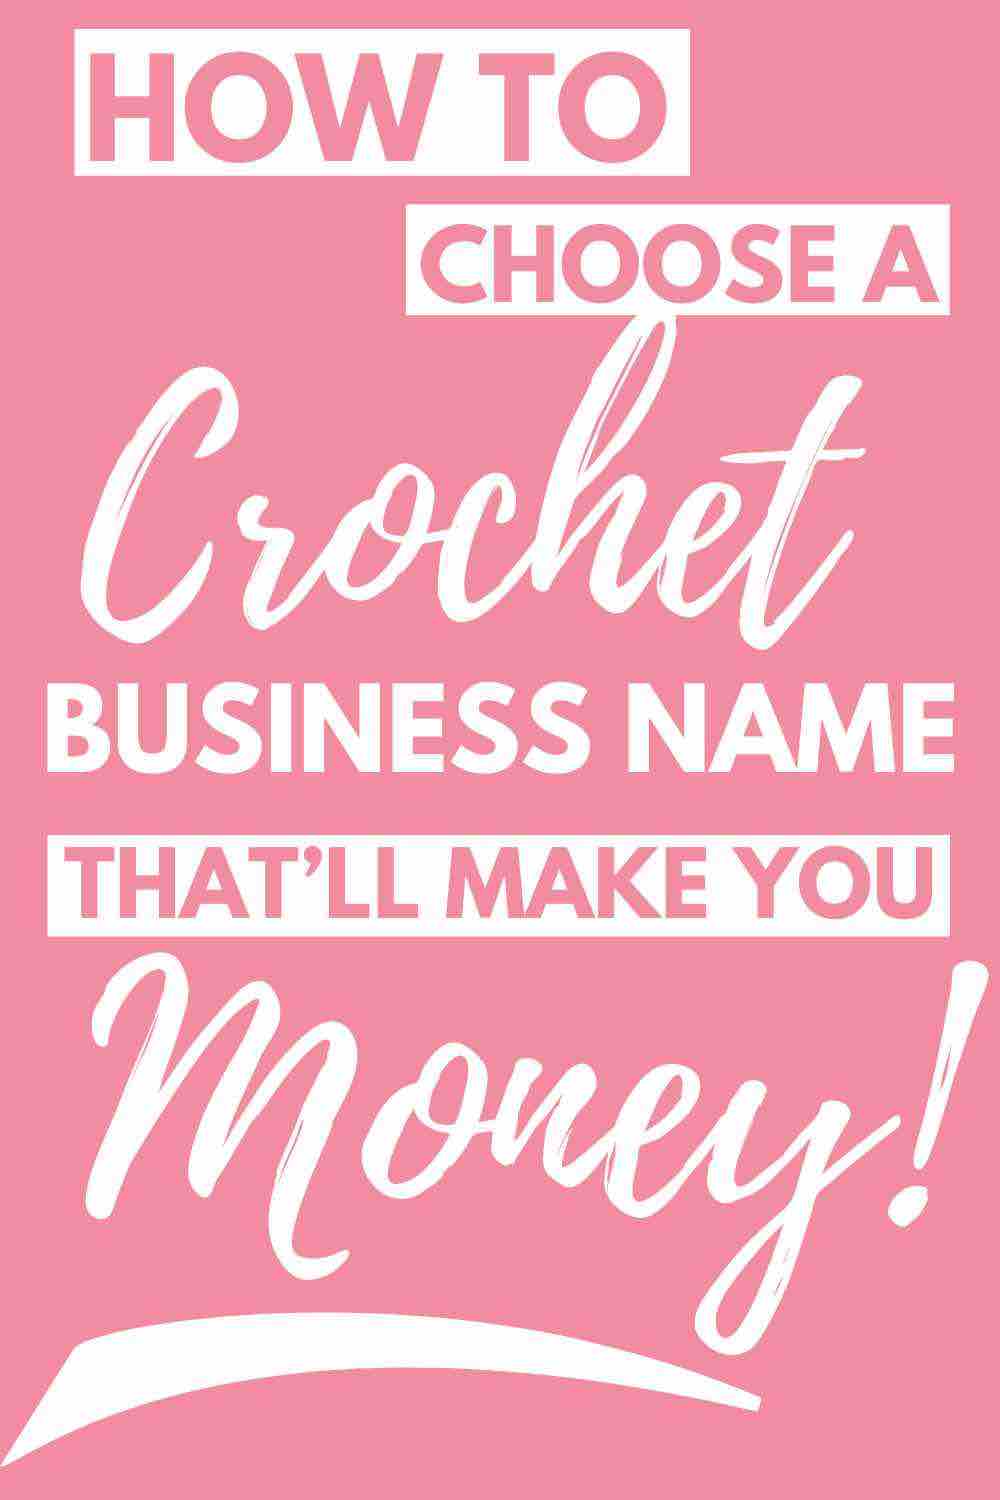 Crochet Business Name - Crochet Business Name Ideas